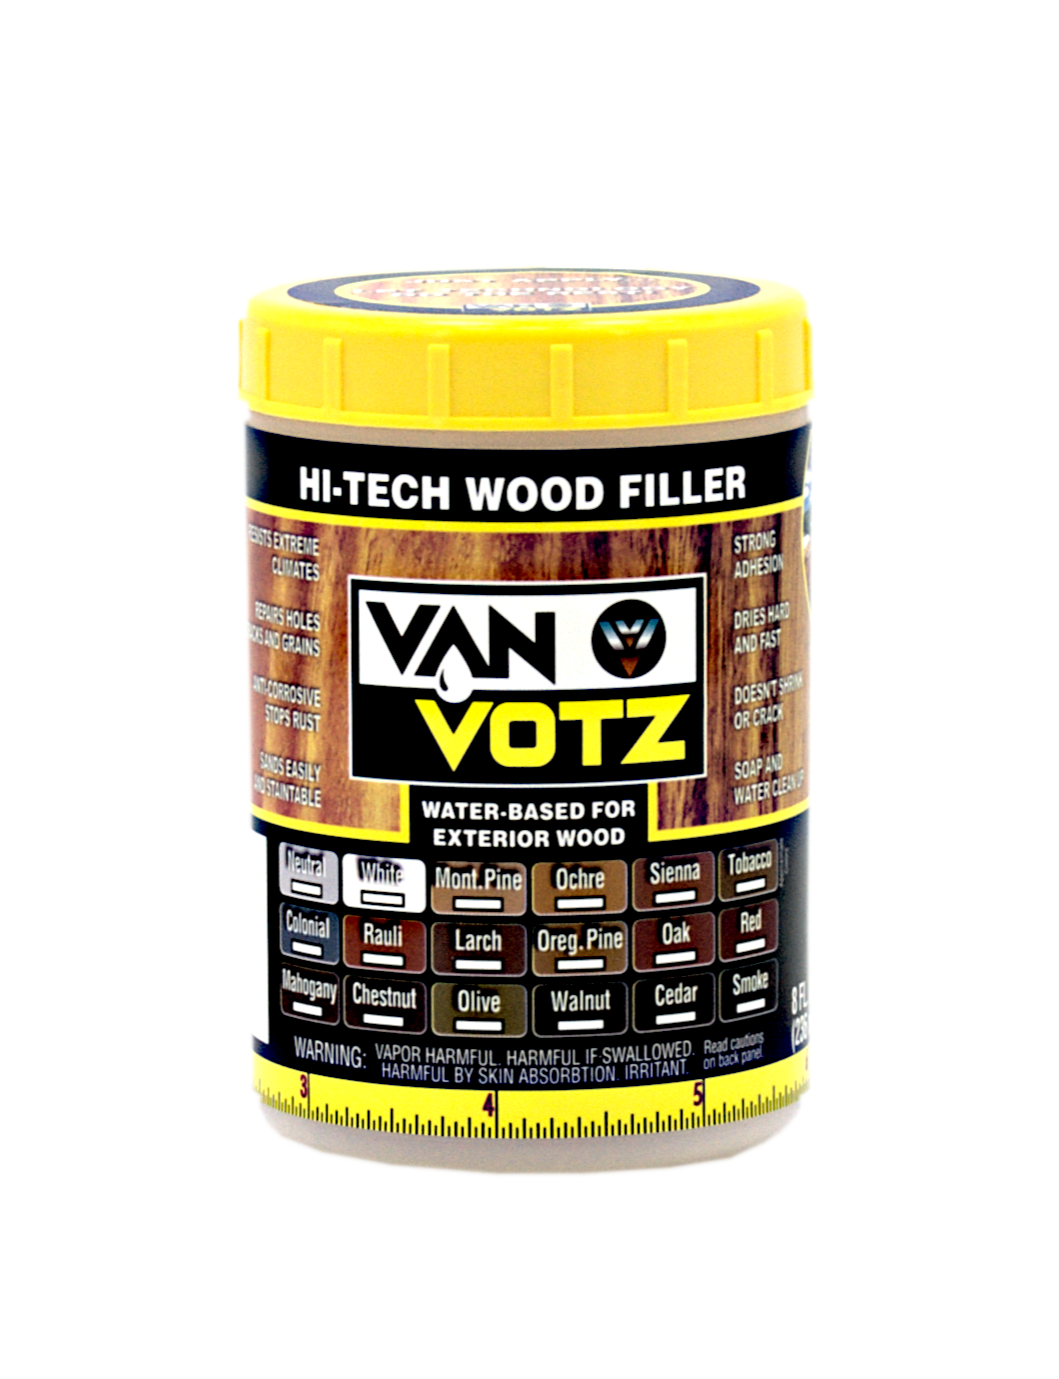 How to Apply Wood Filler – Van Votz